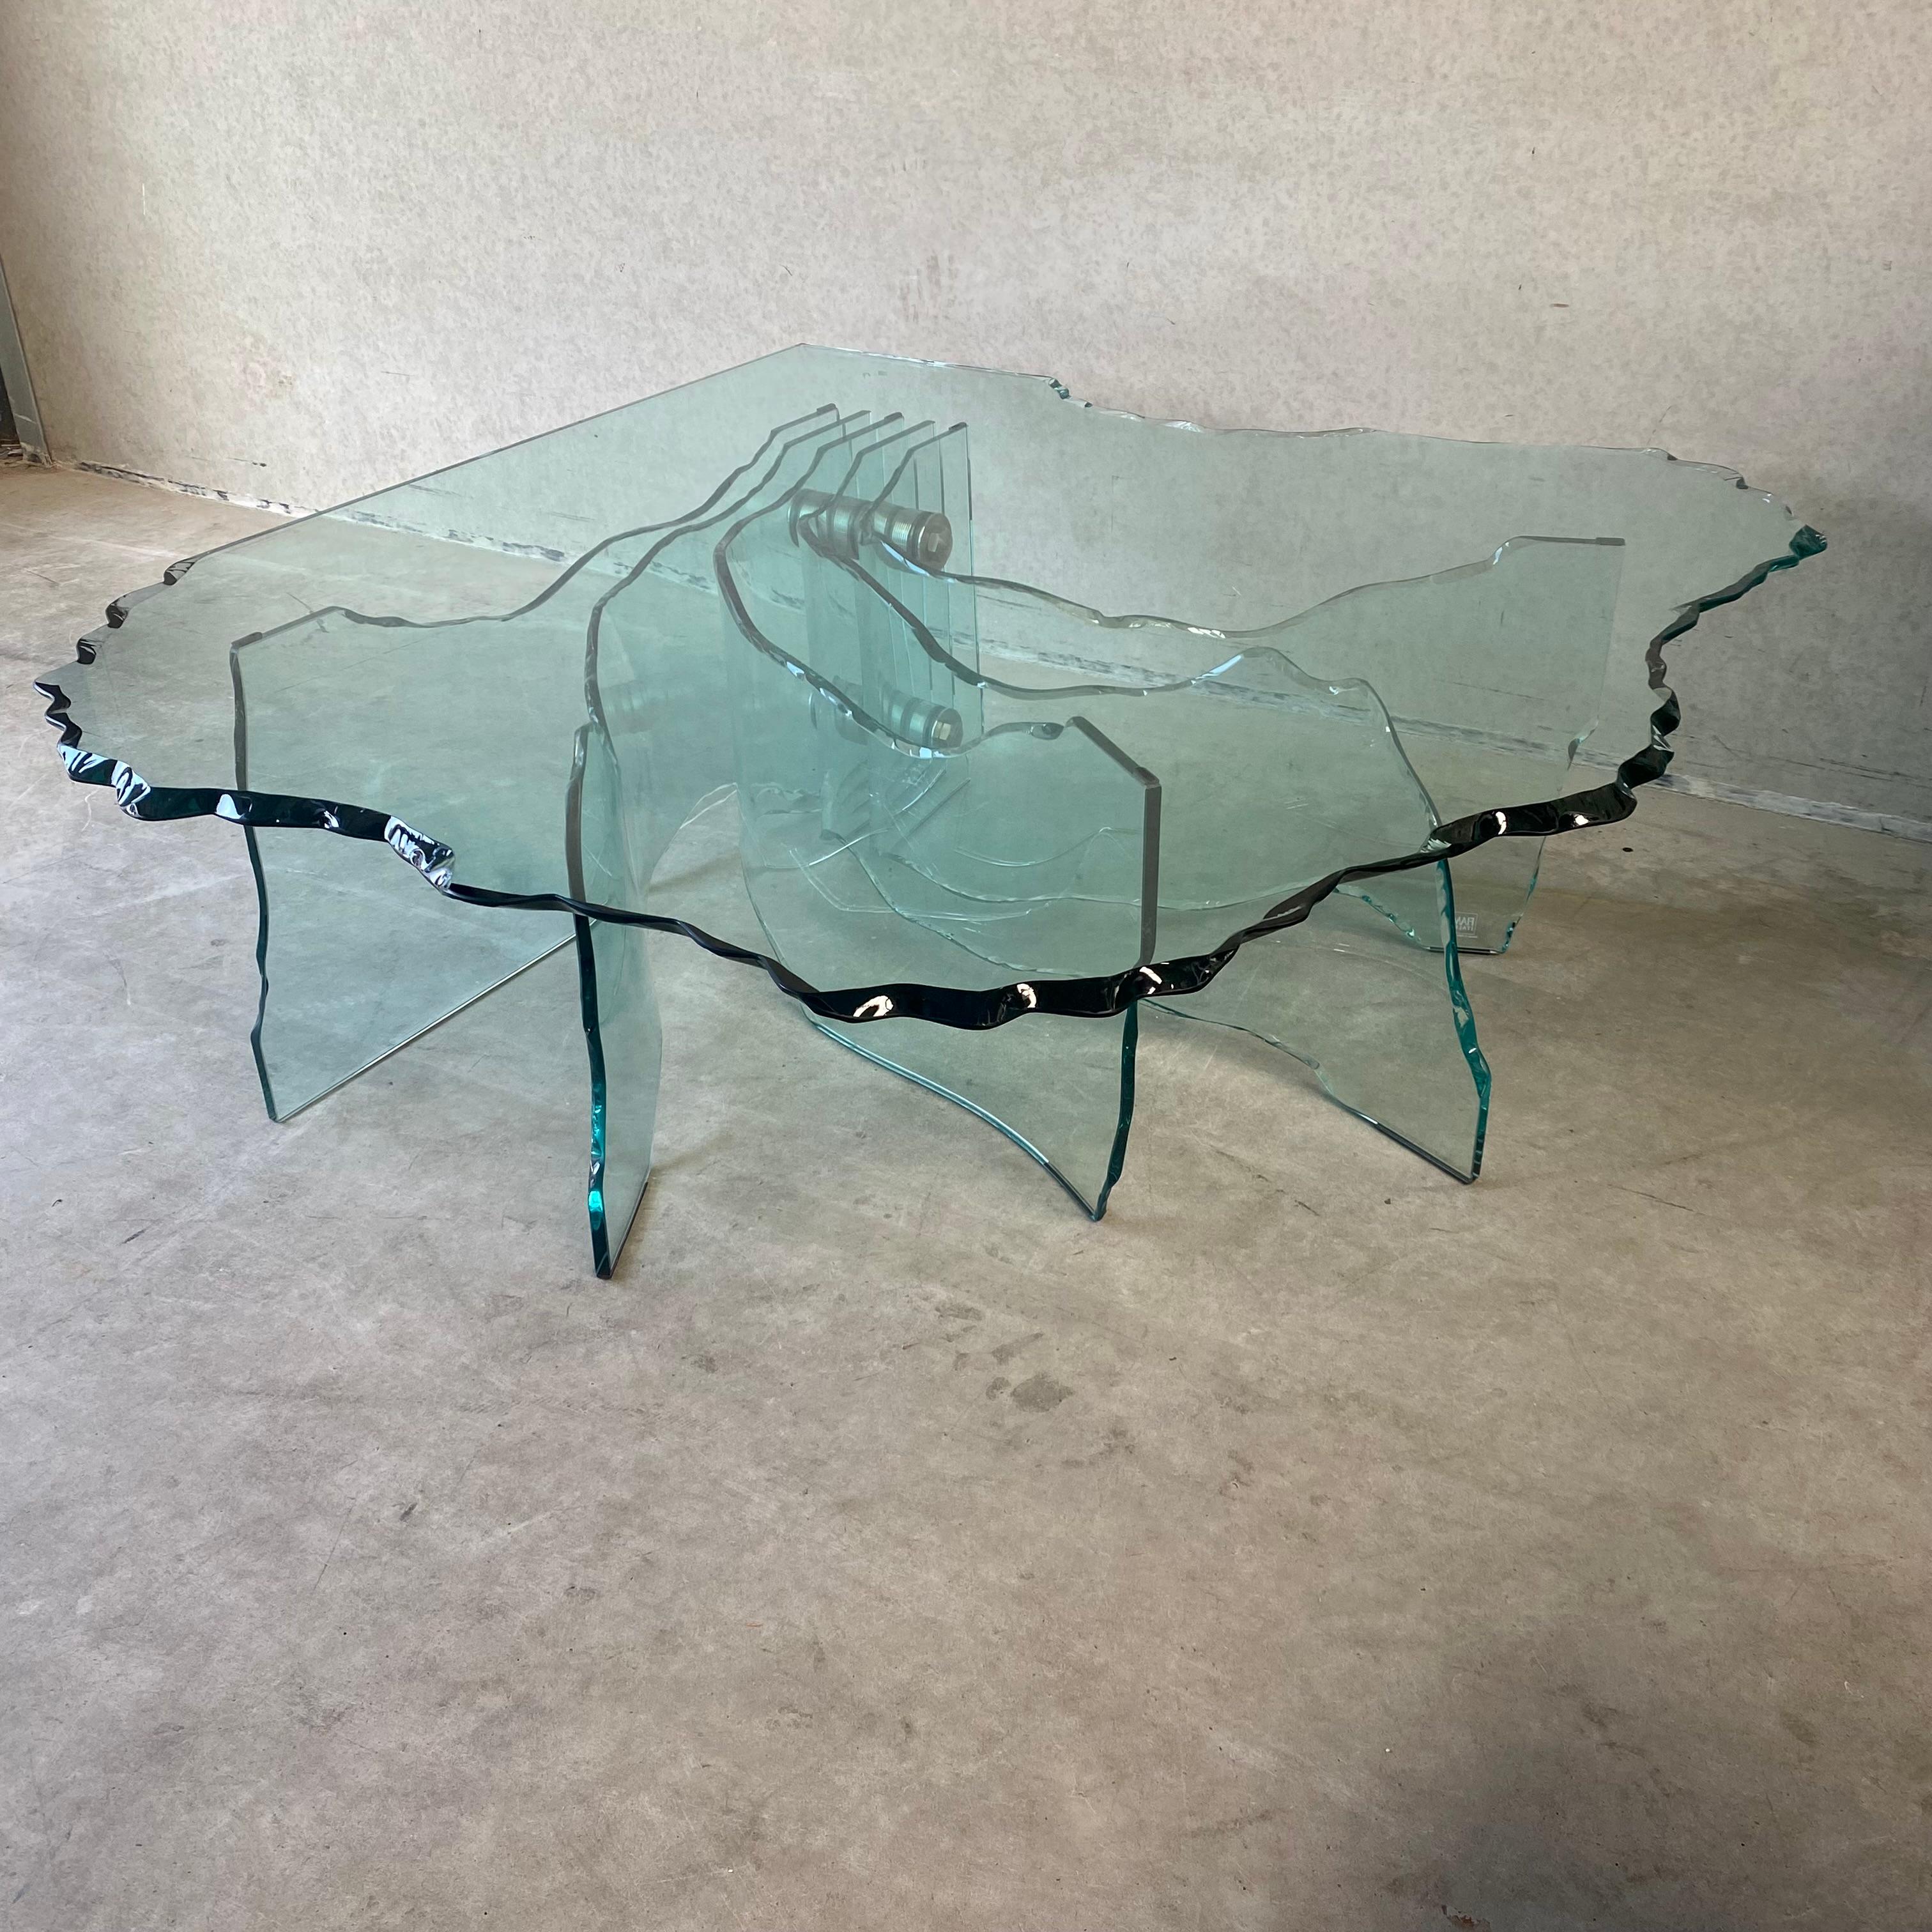 Voici l'époustouflante table basse SHELL, véritable chef-d'œuvre de design réalisé par l'artiste de renom Danny Lane pour FIAM Italie. Avec son élégance sculptée à la main et son état exceptionnel, cette pièce étonnante ne manquera pas de captiver